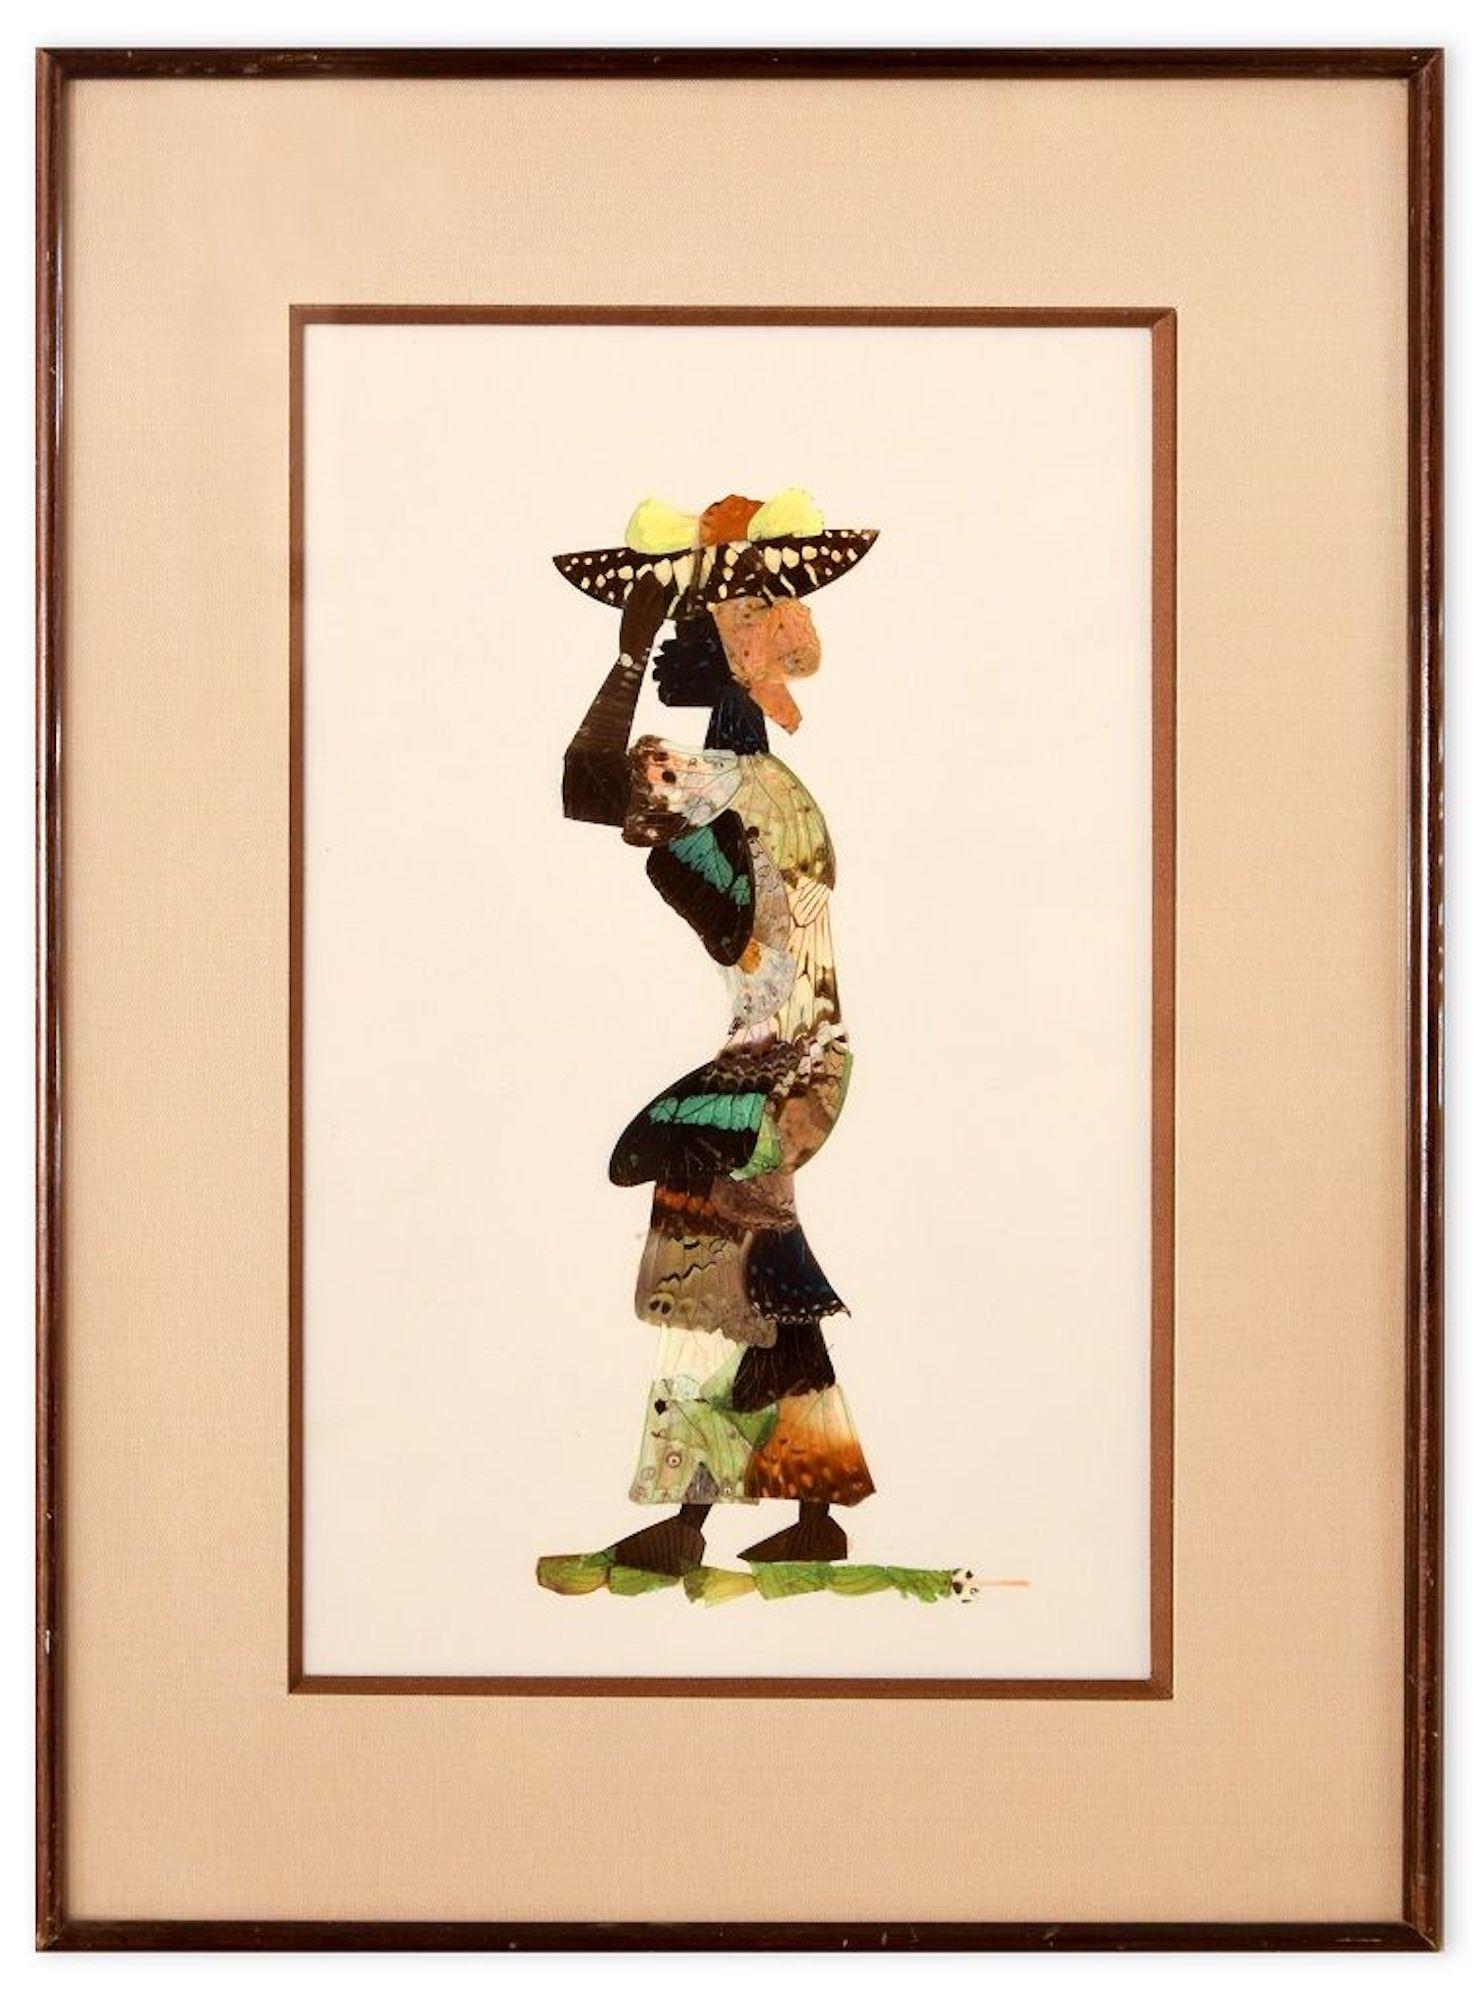 Abmessungen des Bildes: 34,5 x 2 x 21,5 cm.

African Butterfly Woman ist eine originelle Collage, die Mitte des XX. Jahrhunderts in Frankreich entstanden ist. 

Original 